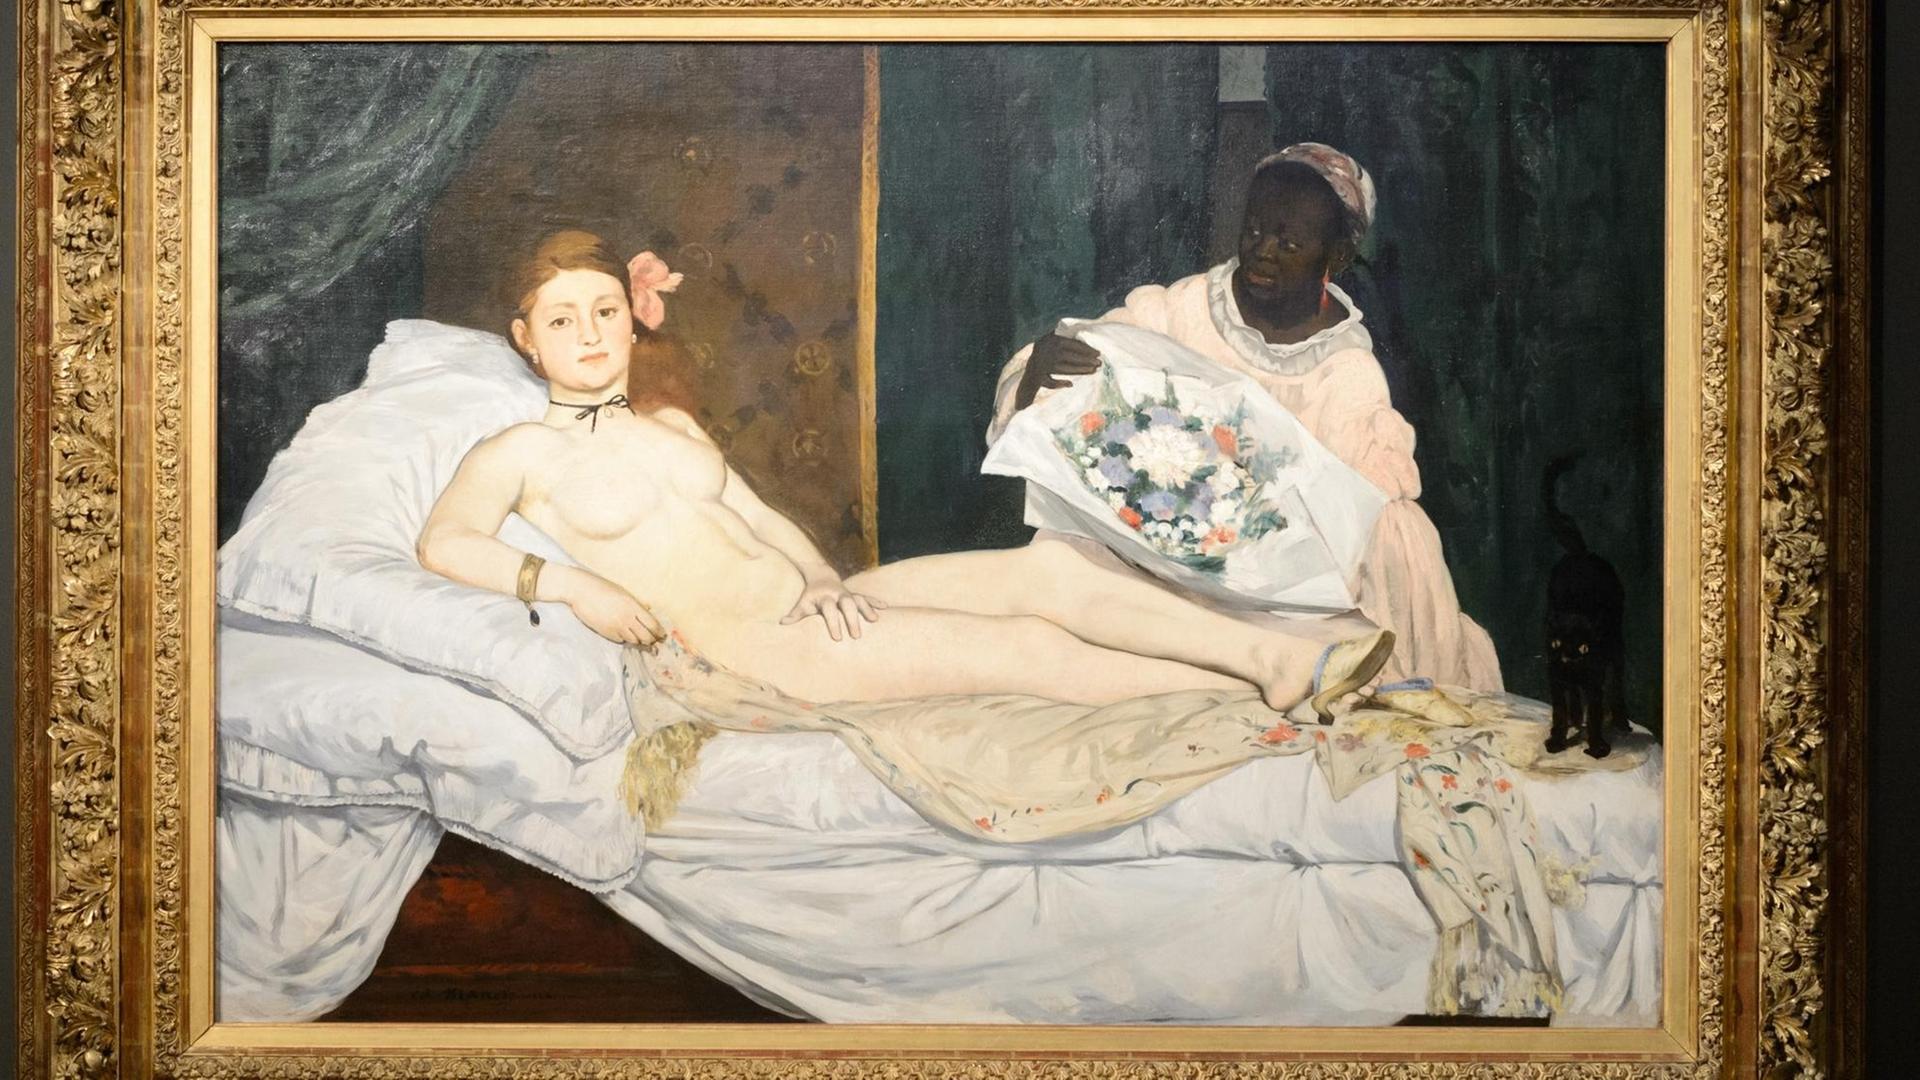 Edouard Manets Gemälde "Olympia" zeigt links im Bild eine weiße, nackte Frau, die in einem Bett liegt und rechts im Bild eine schwarze Frau mit Blumenstrauß.